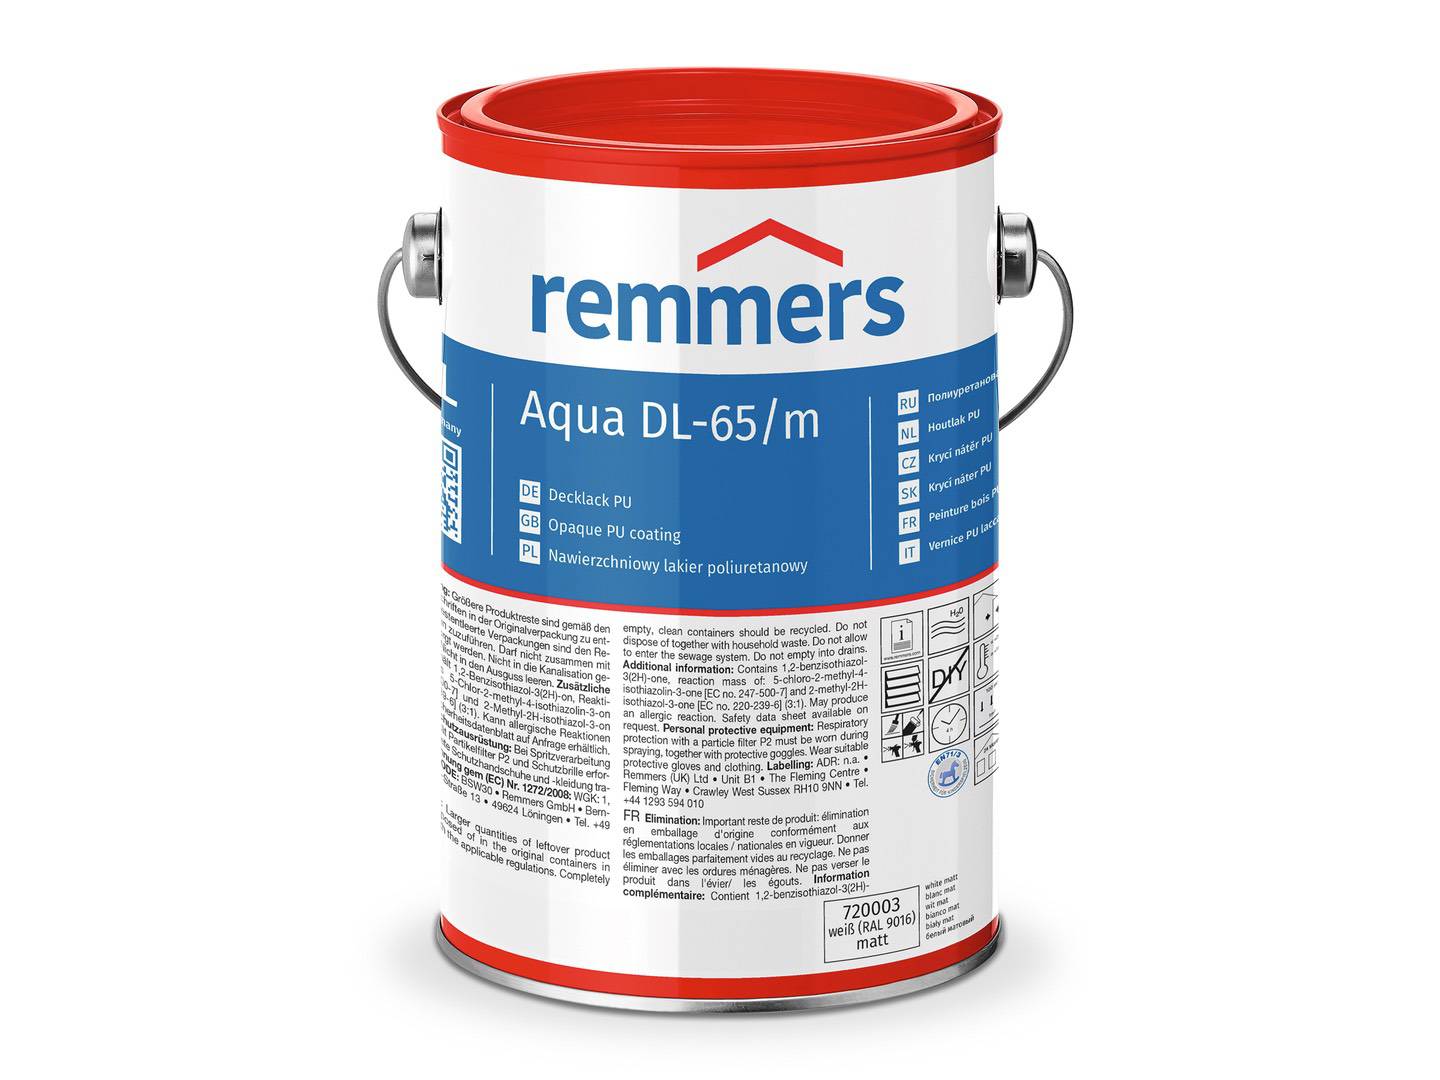 REMMERS Aqua DL-65-Decklack PU